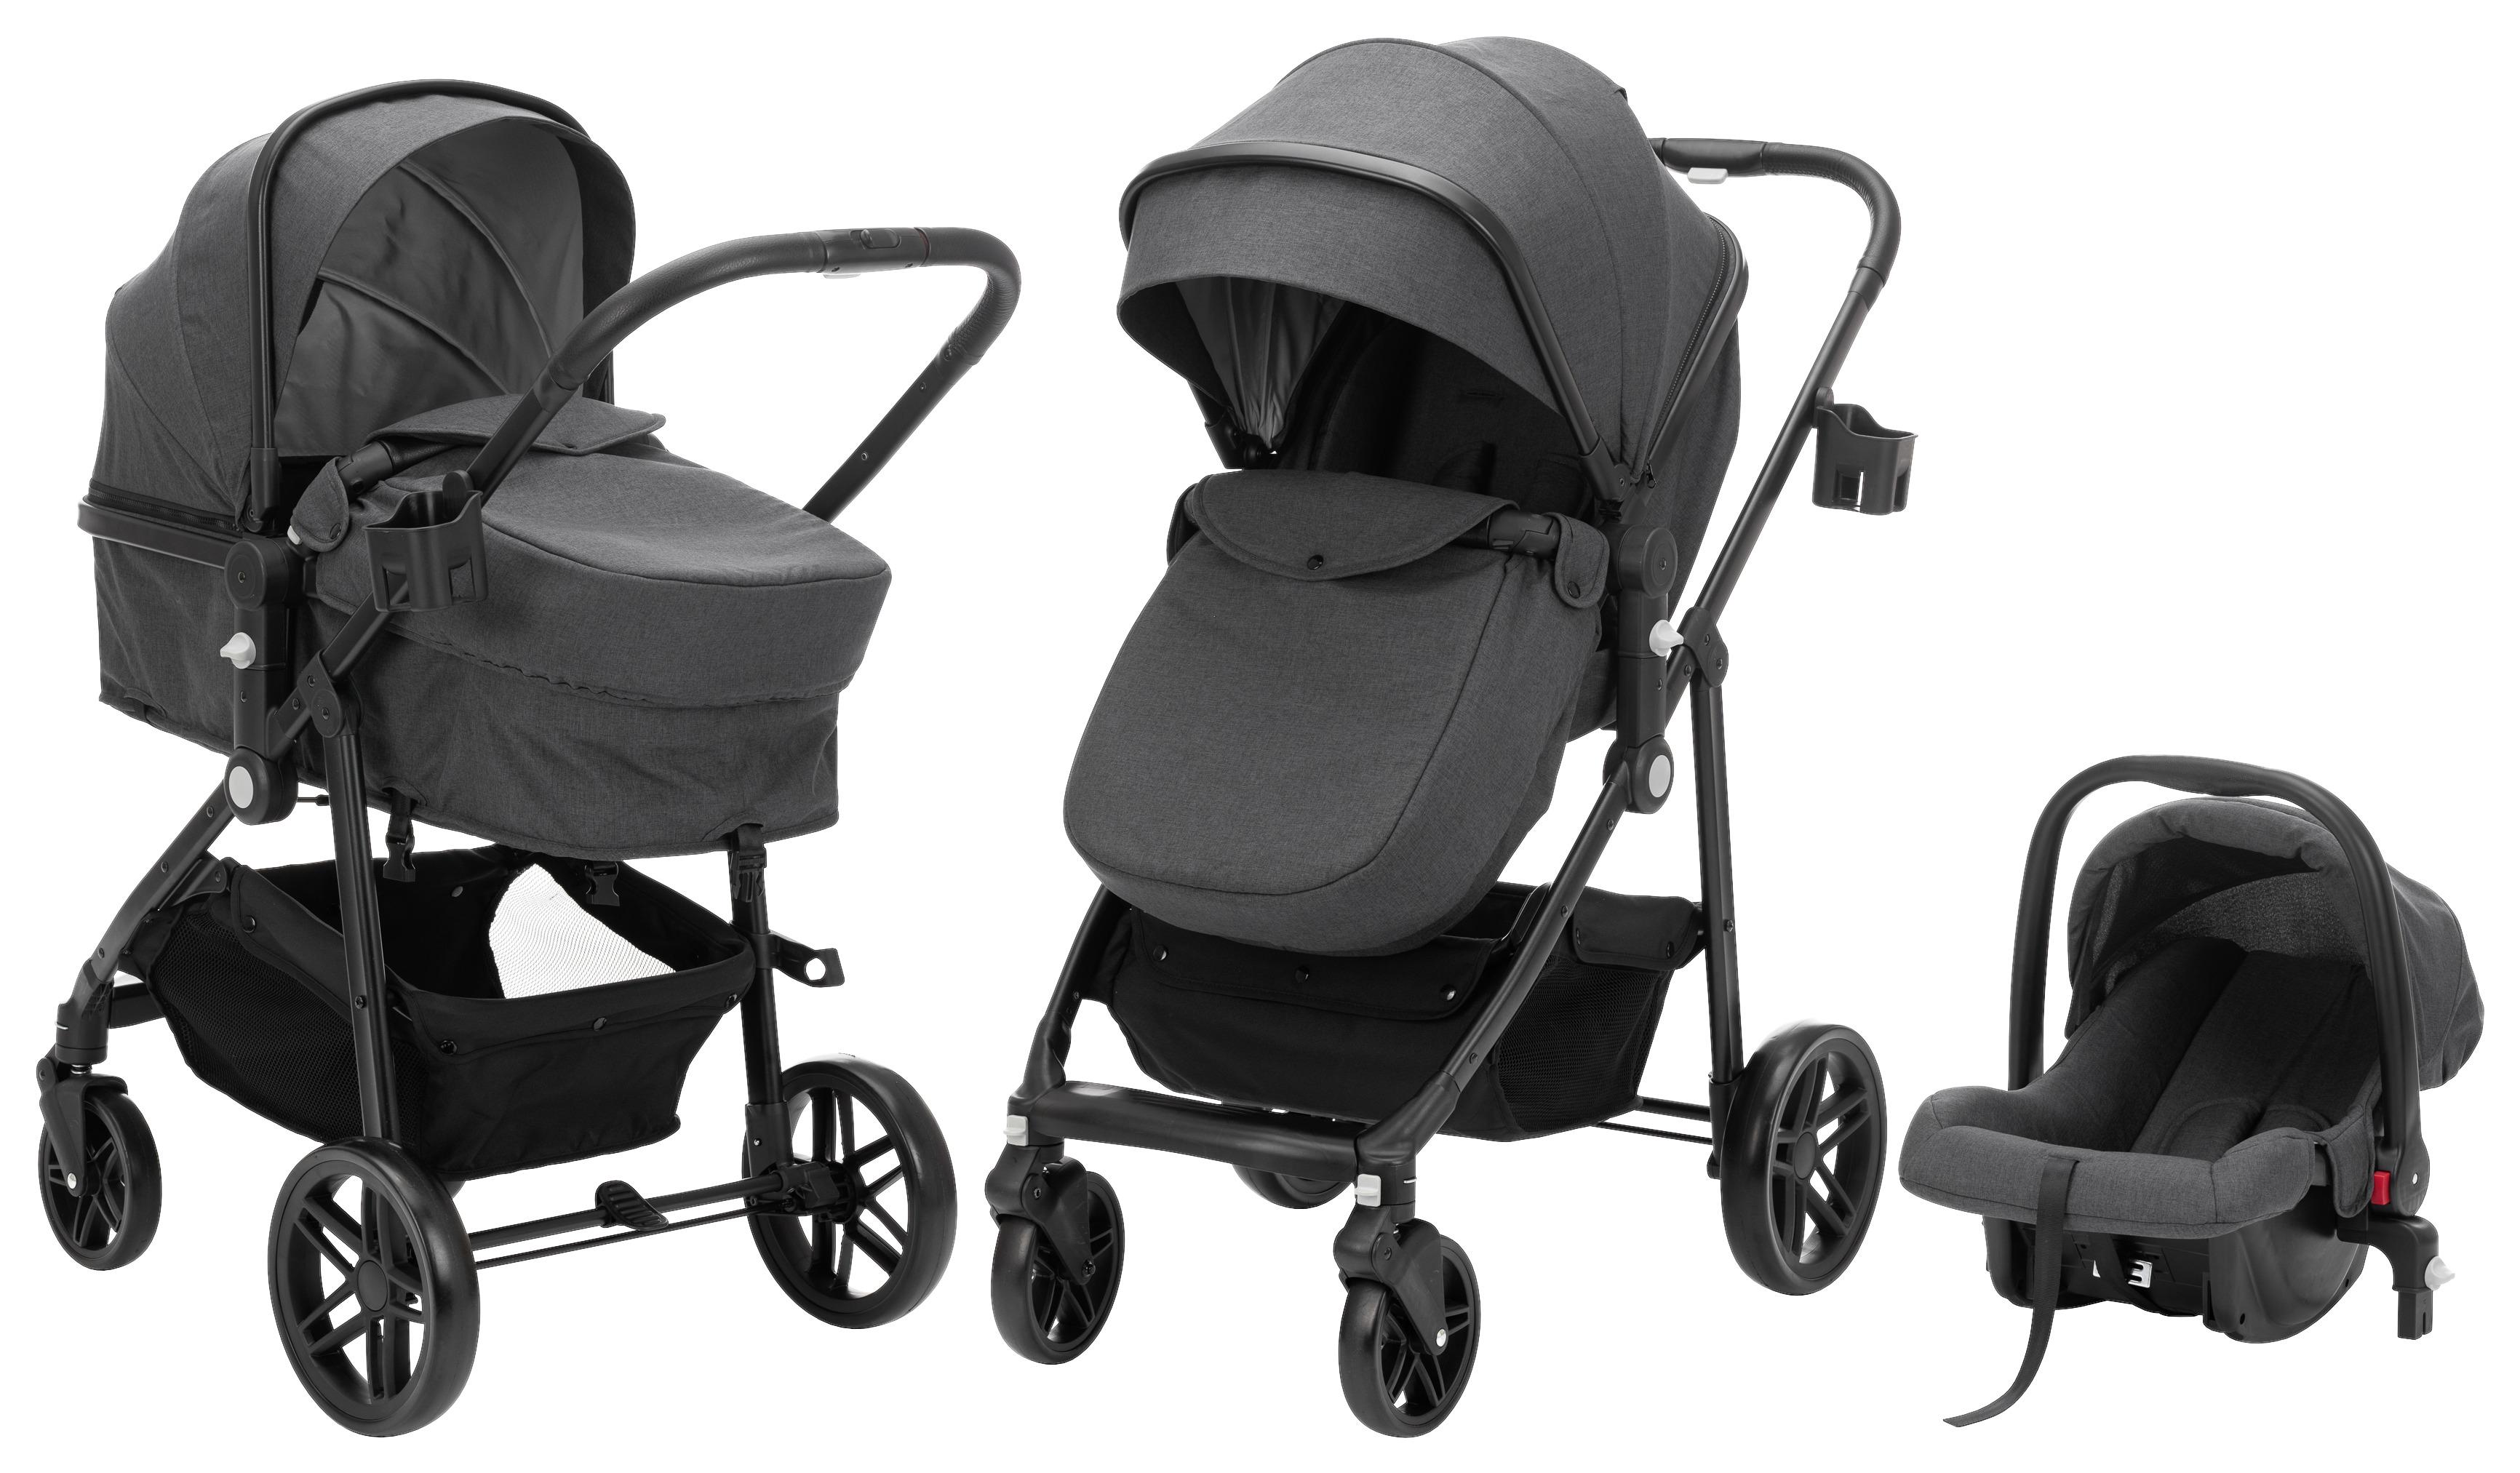 Kinderwagen Balu Premium 3in1 mit Babyschale + Sonnenschutz